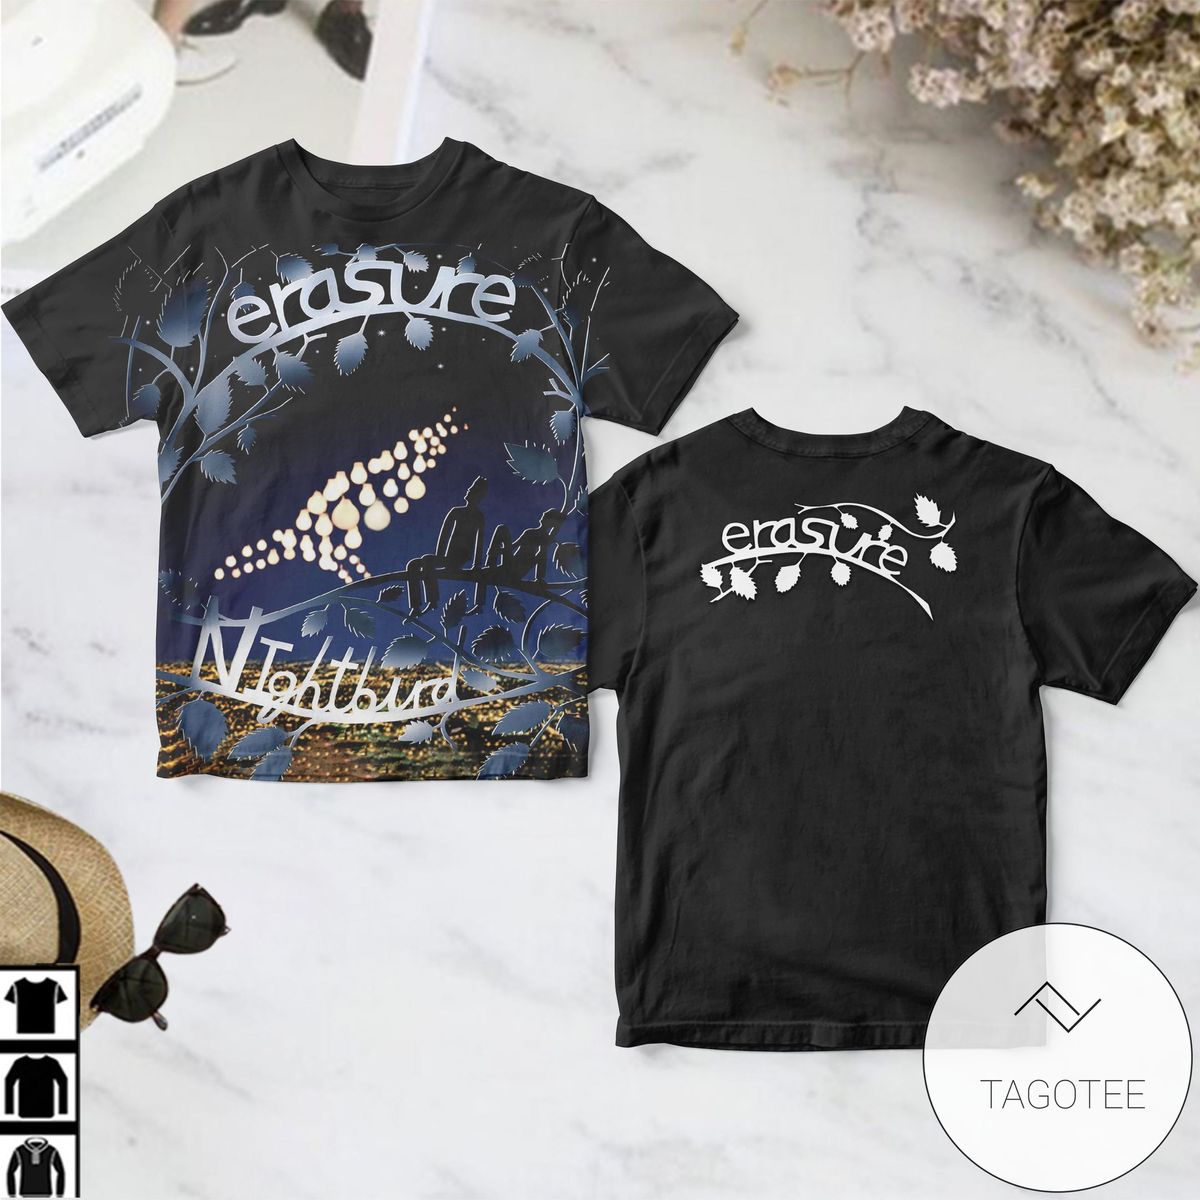 Erasure Nightbird Album Cover Shirt